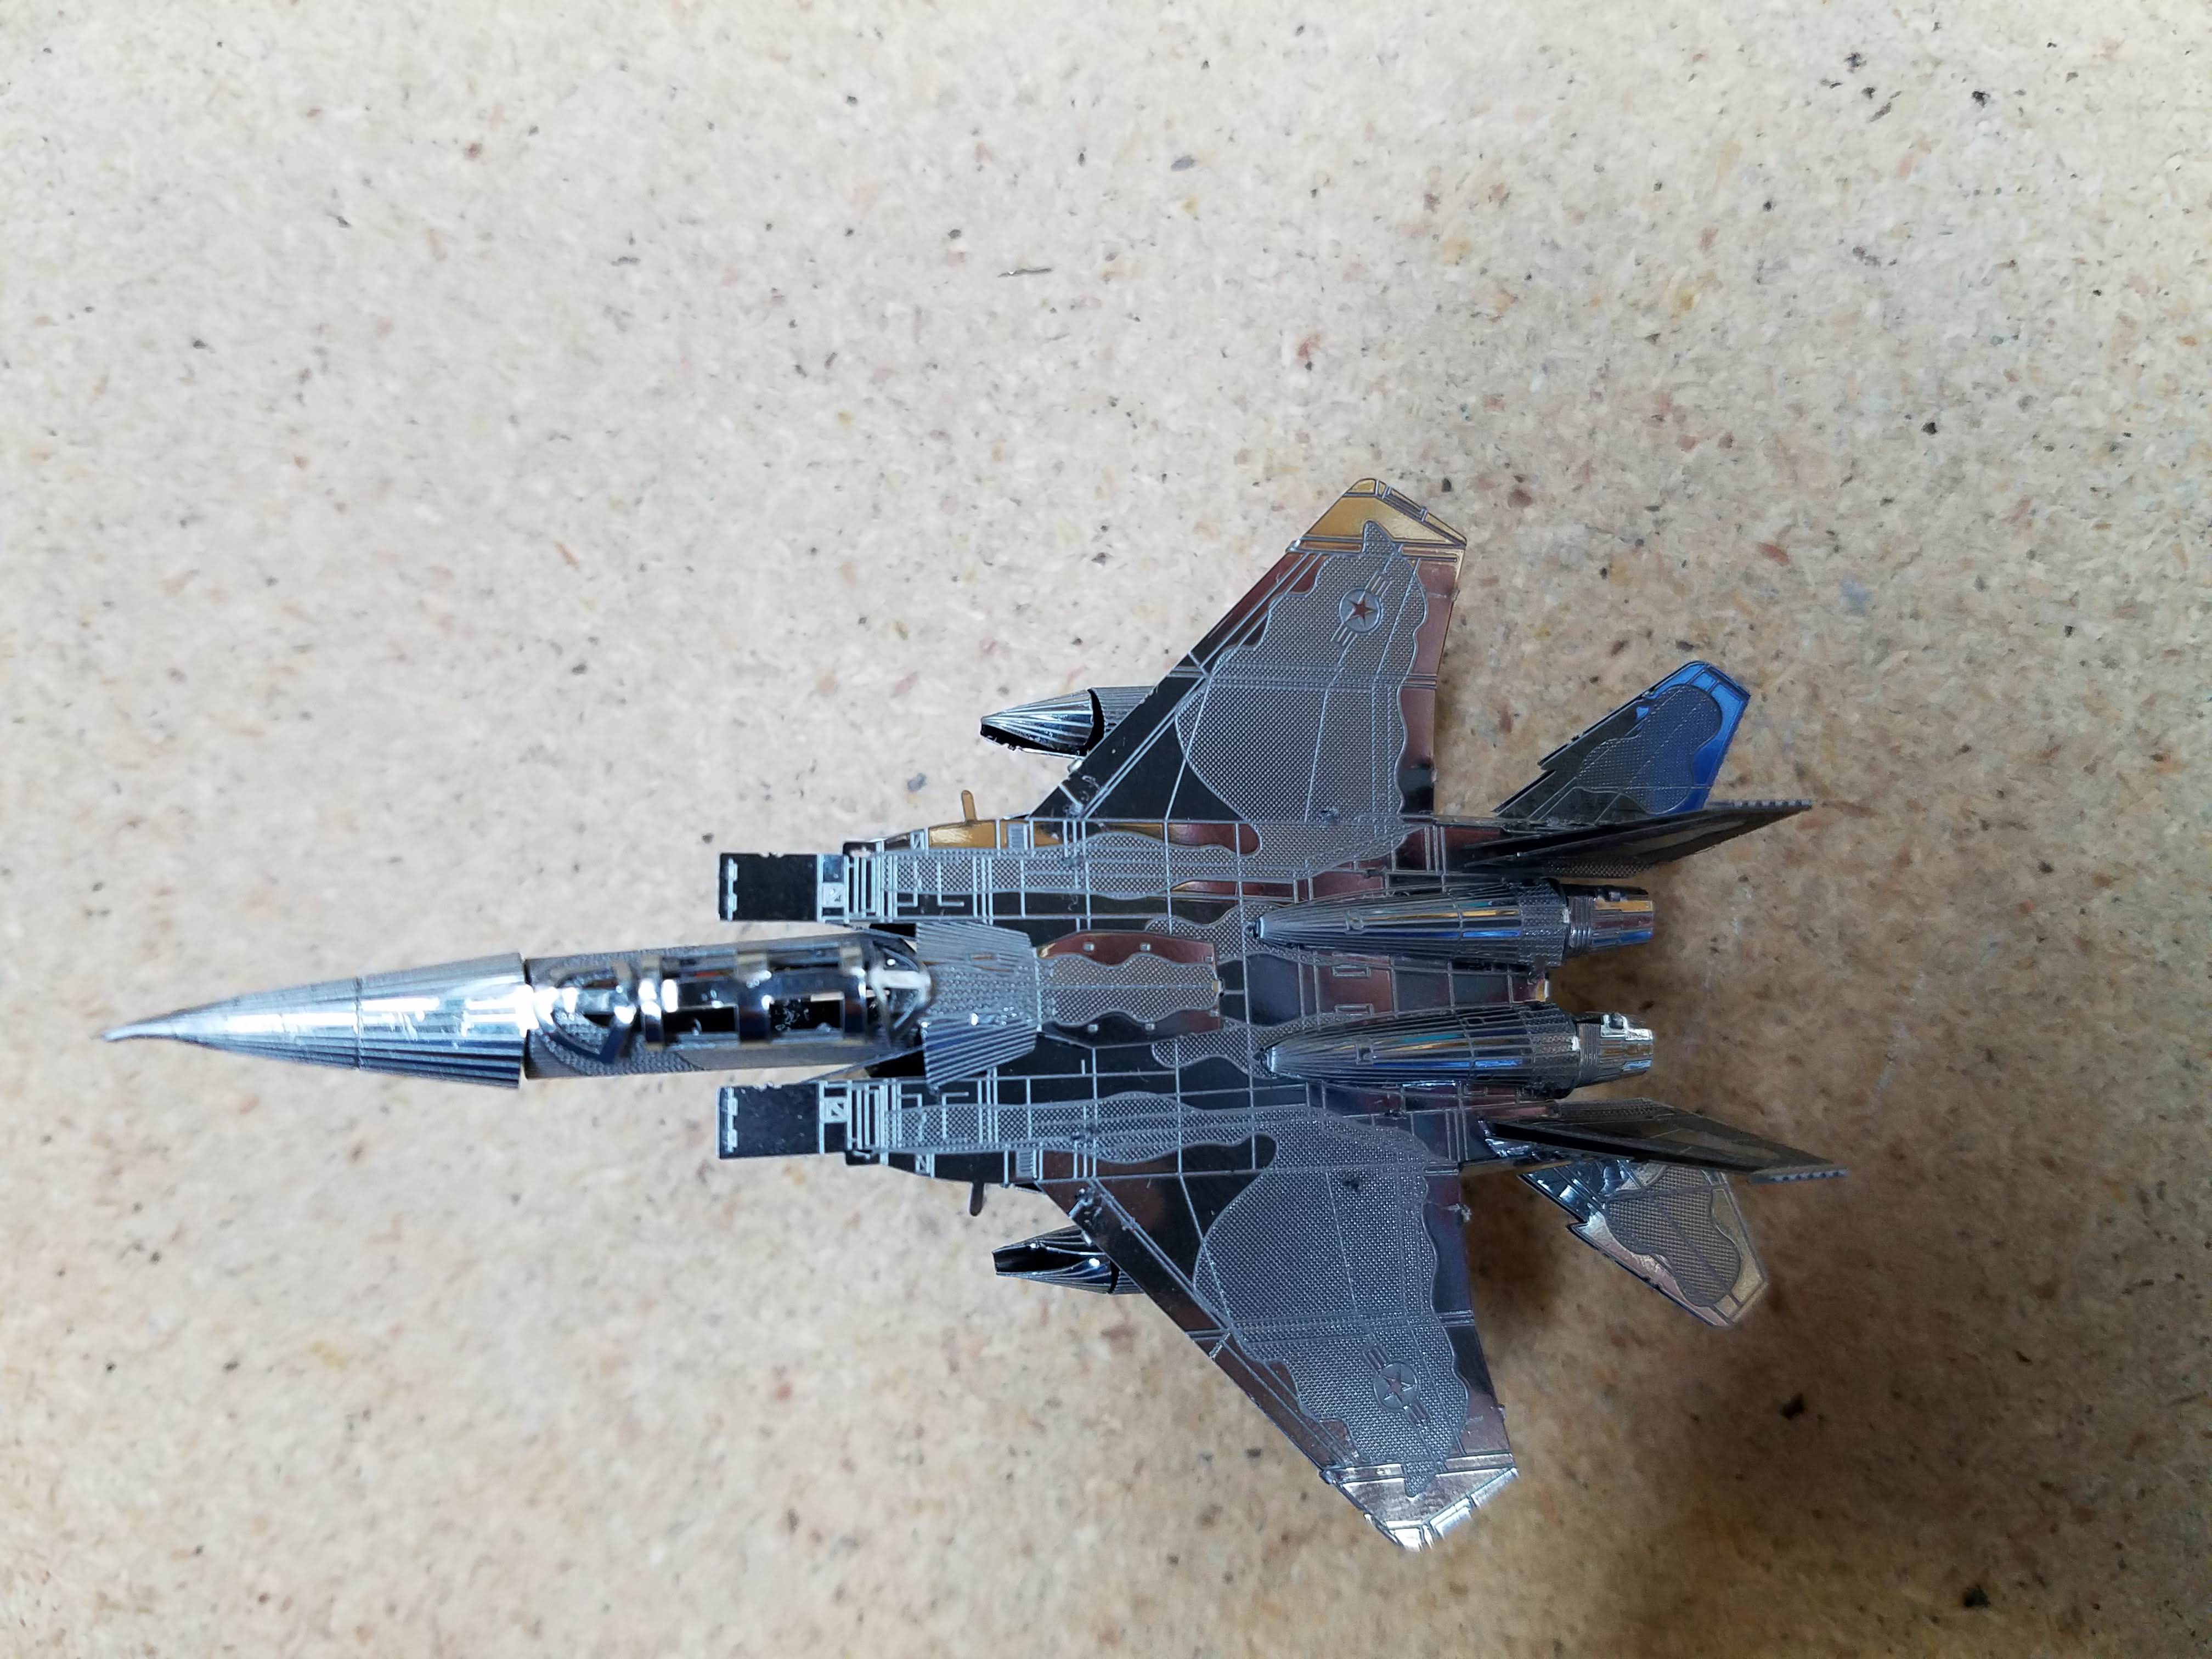 003 F-15 Eagle